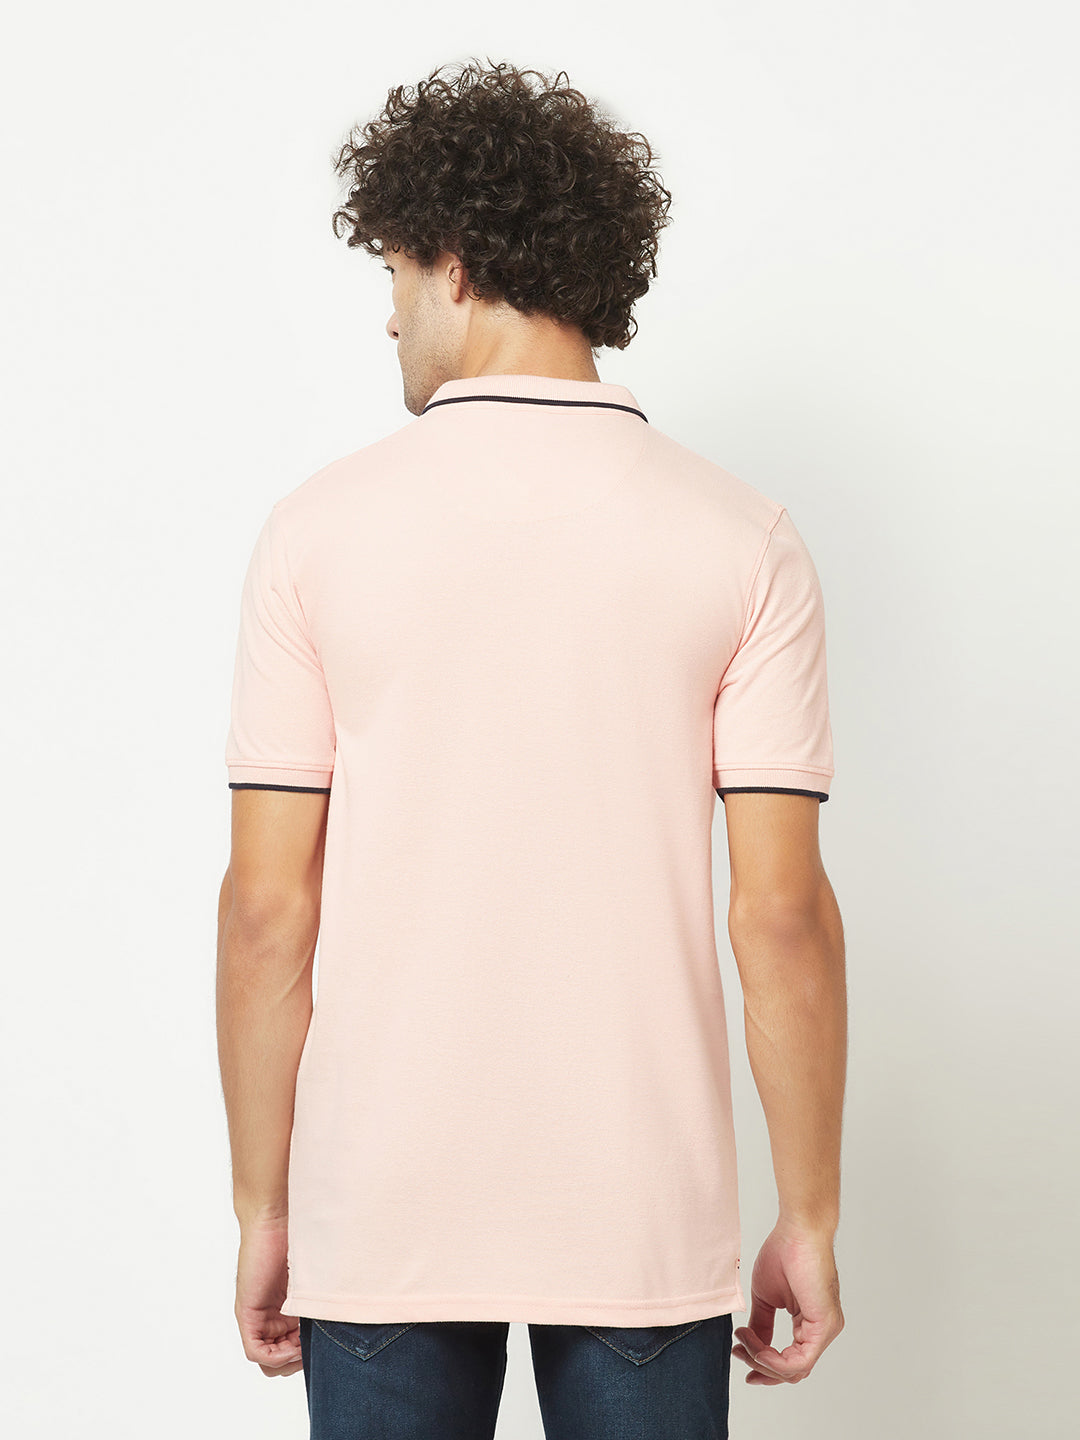  Peach Minimal Polo T-Shirt